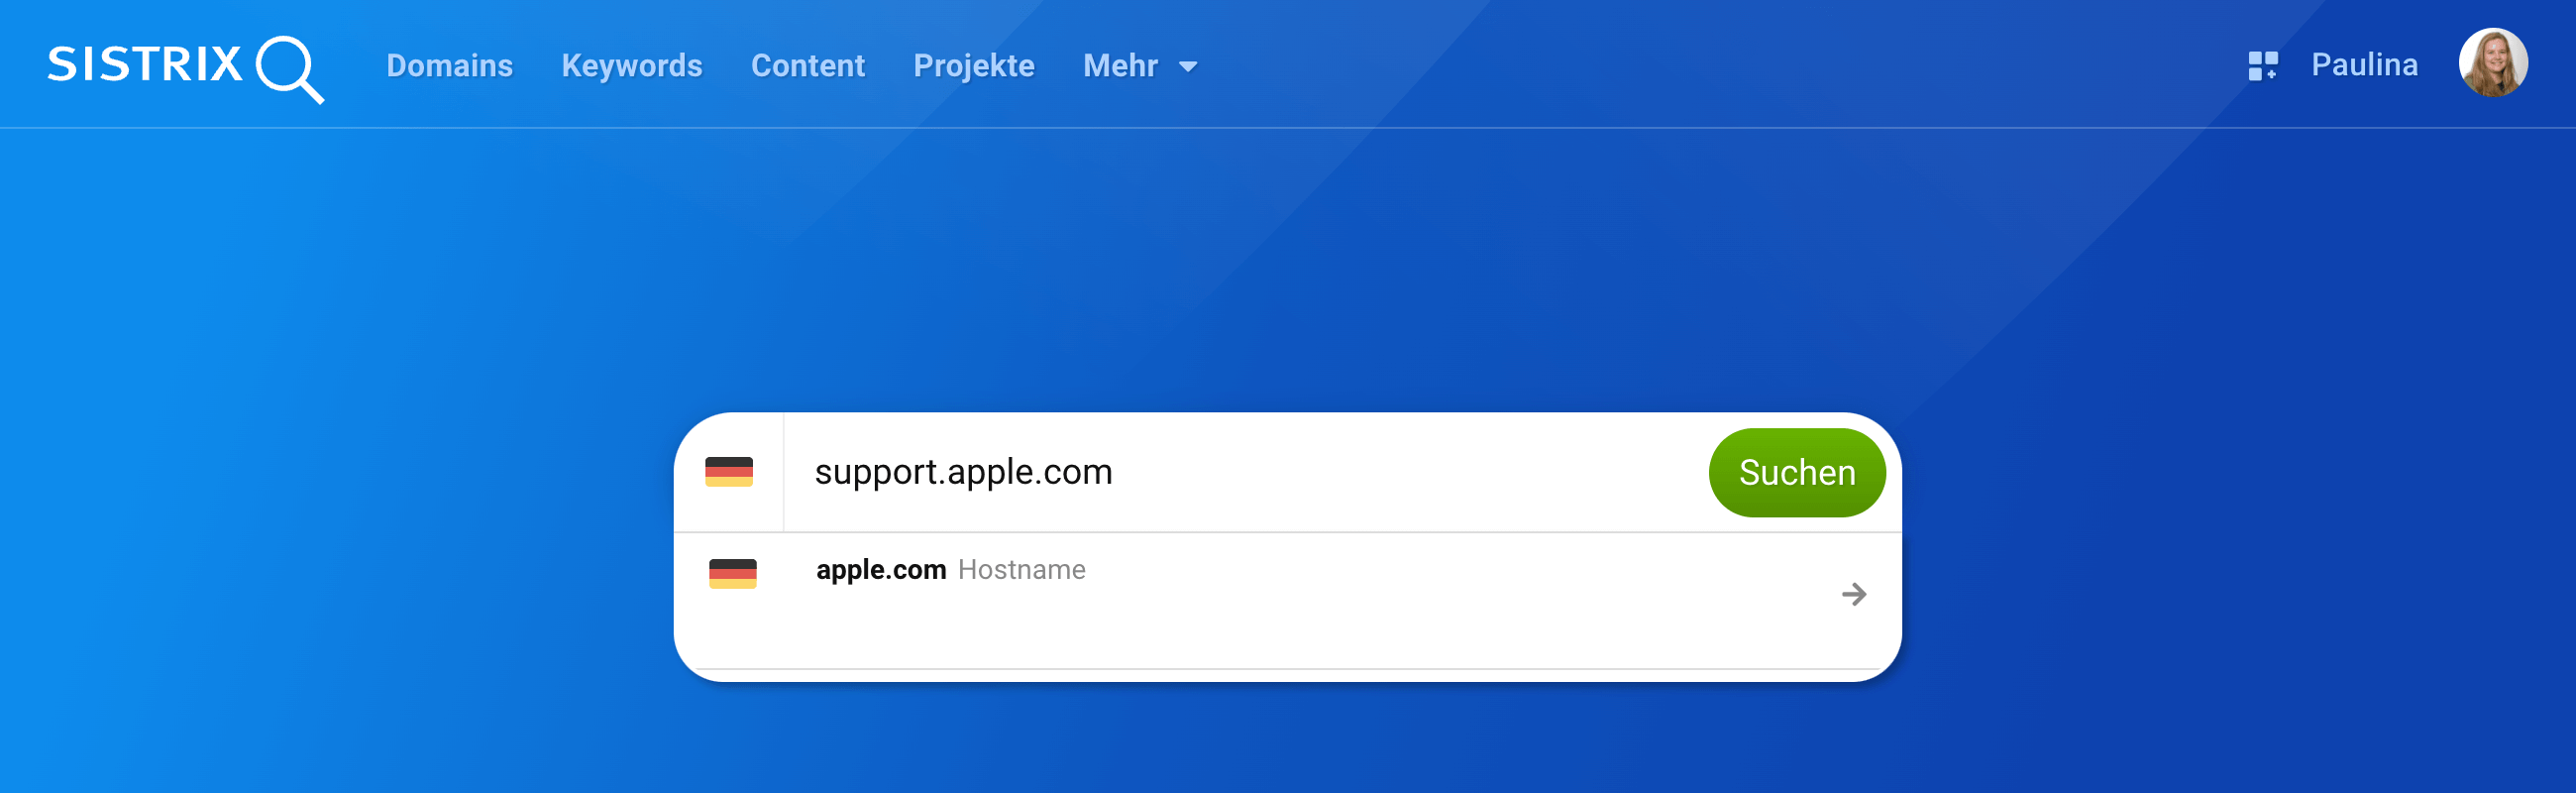 In den Suchschlitz auf der blauen SISTRIX Startseite ist der Hostname support.apple.com eingegeben. Darunter klappt der Hinweis auf, dass es sich um einen Hostnamen handelt und es gibt einen Pfeil-Button, um zum Hostüberblick zu gelangen.